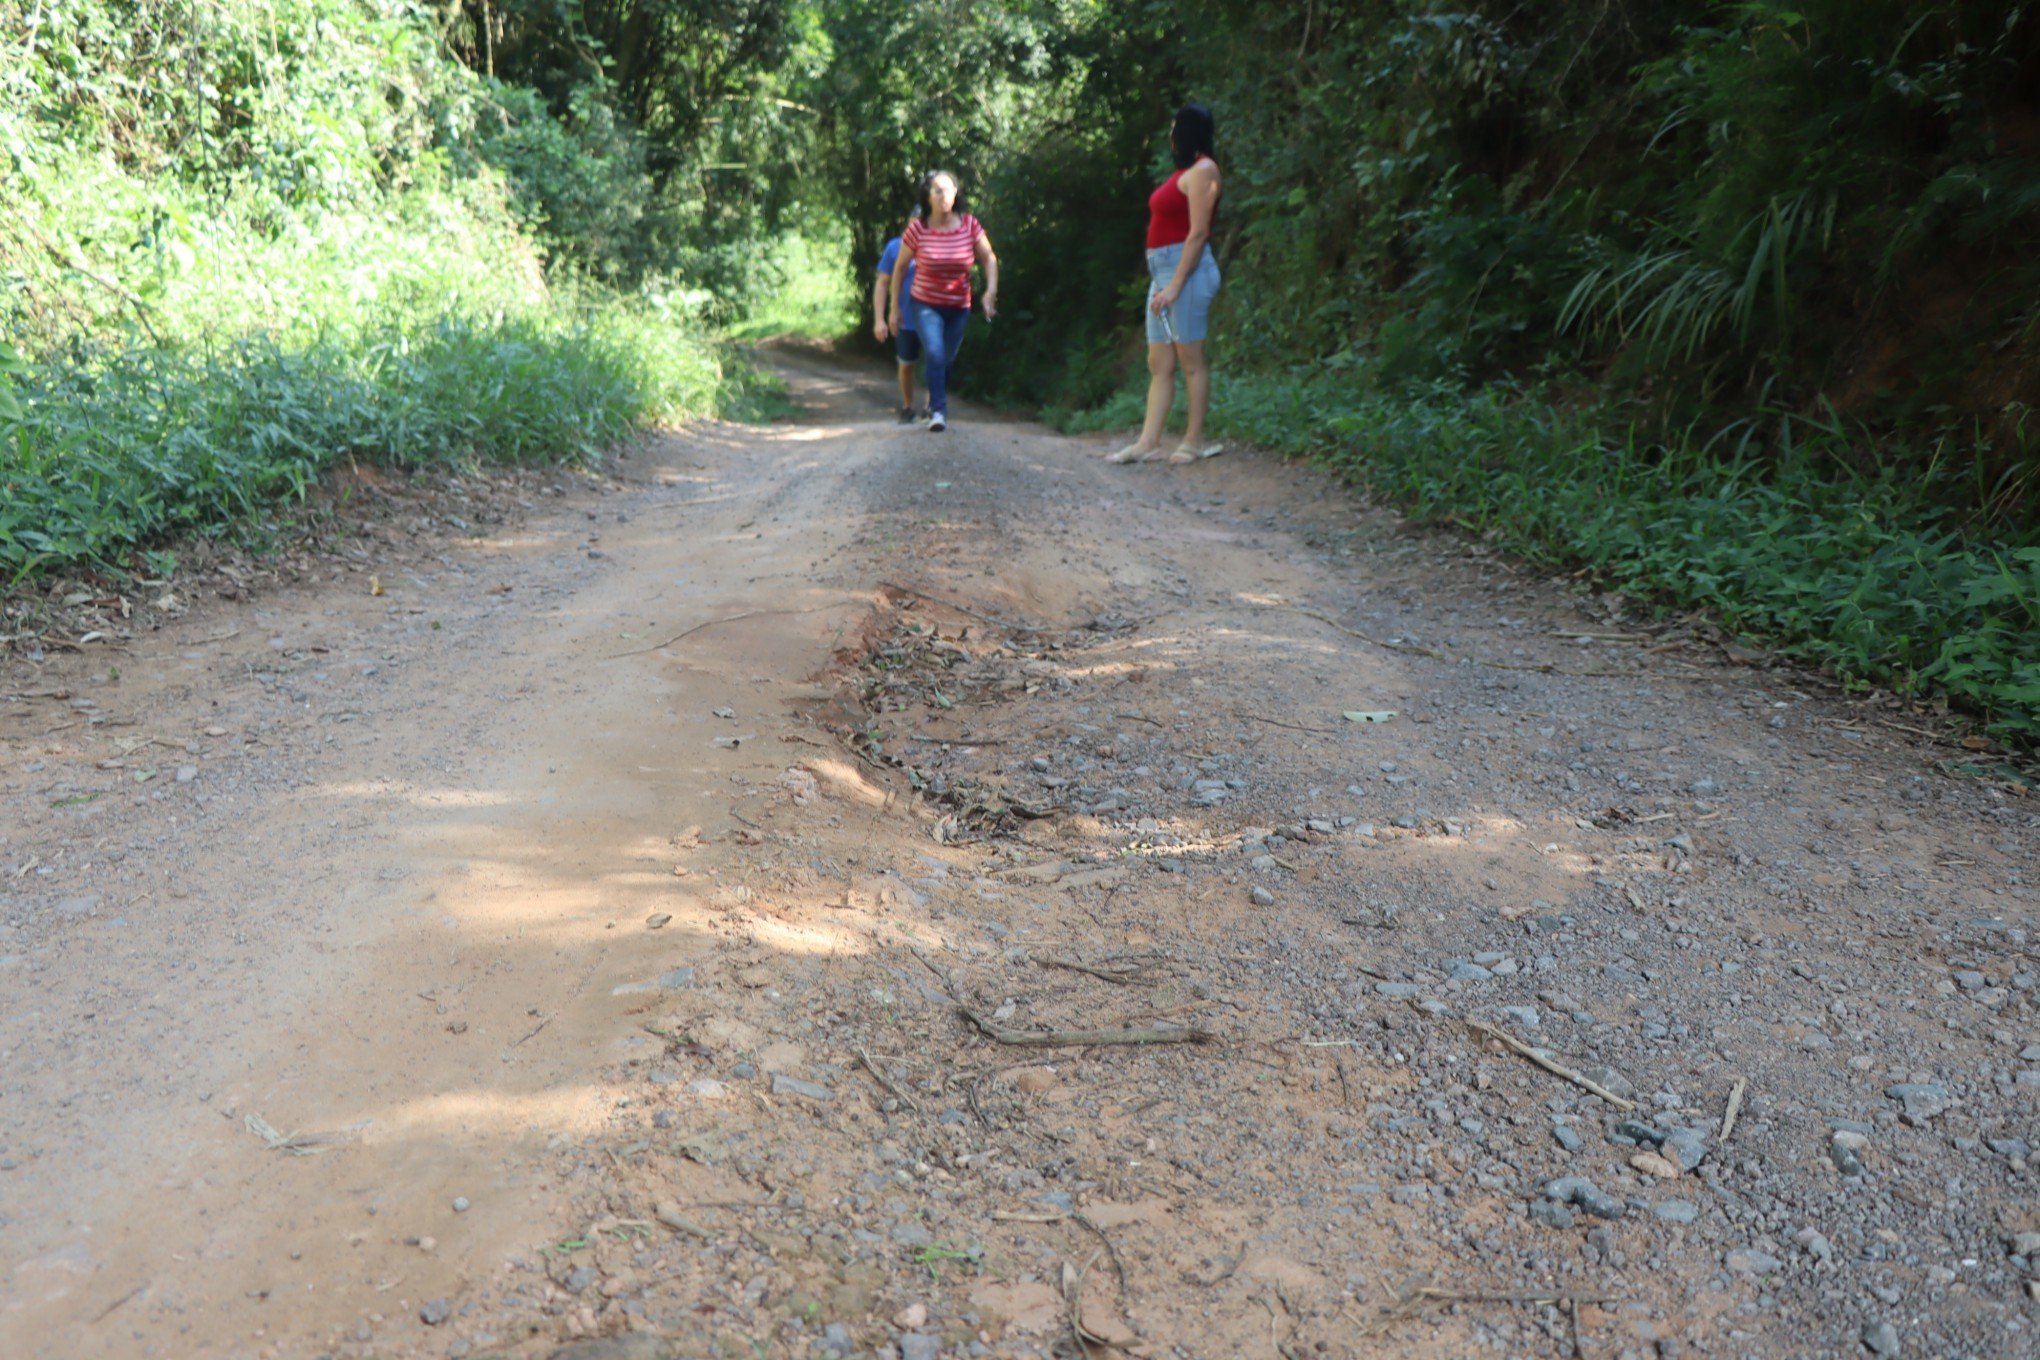 Moradores de Lomba Grande reivindicam estradas melhores: "É um sofrimento para todos"